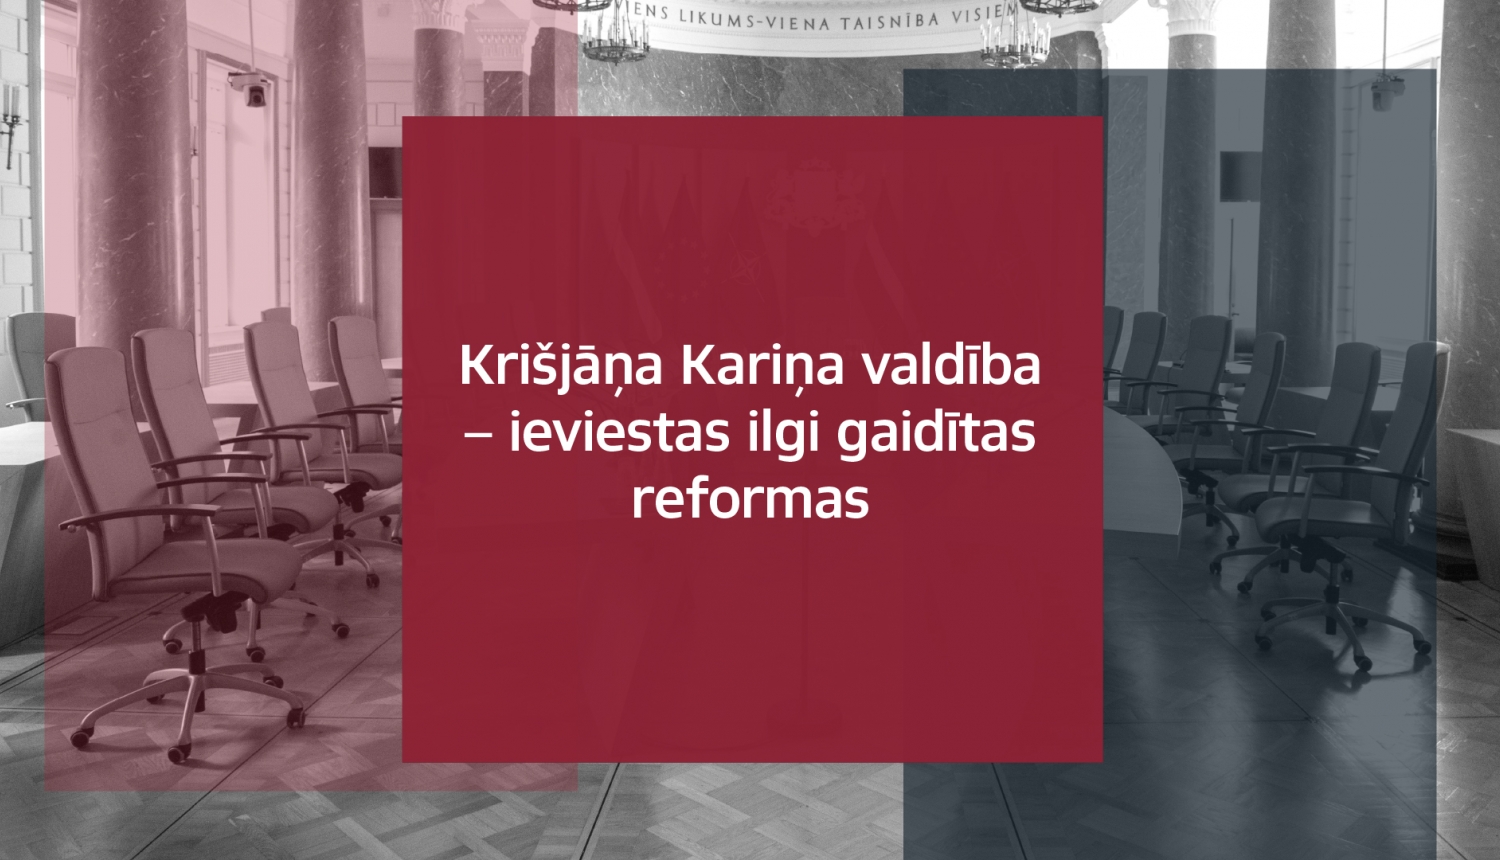 Teksts uz MK zāles attēla: Krišjāņa Kariņa valdība - ieviestas ilgi gaidītas reformas